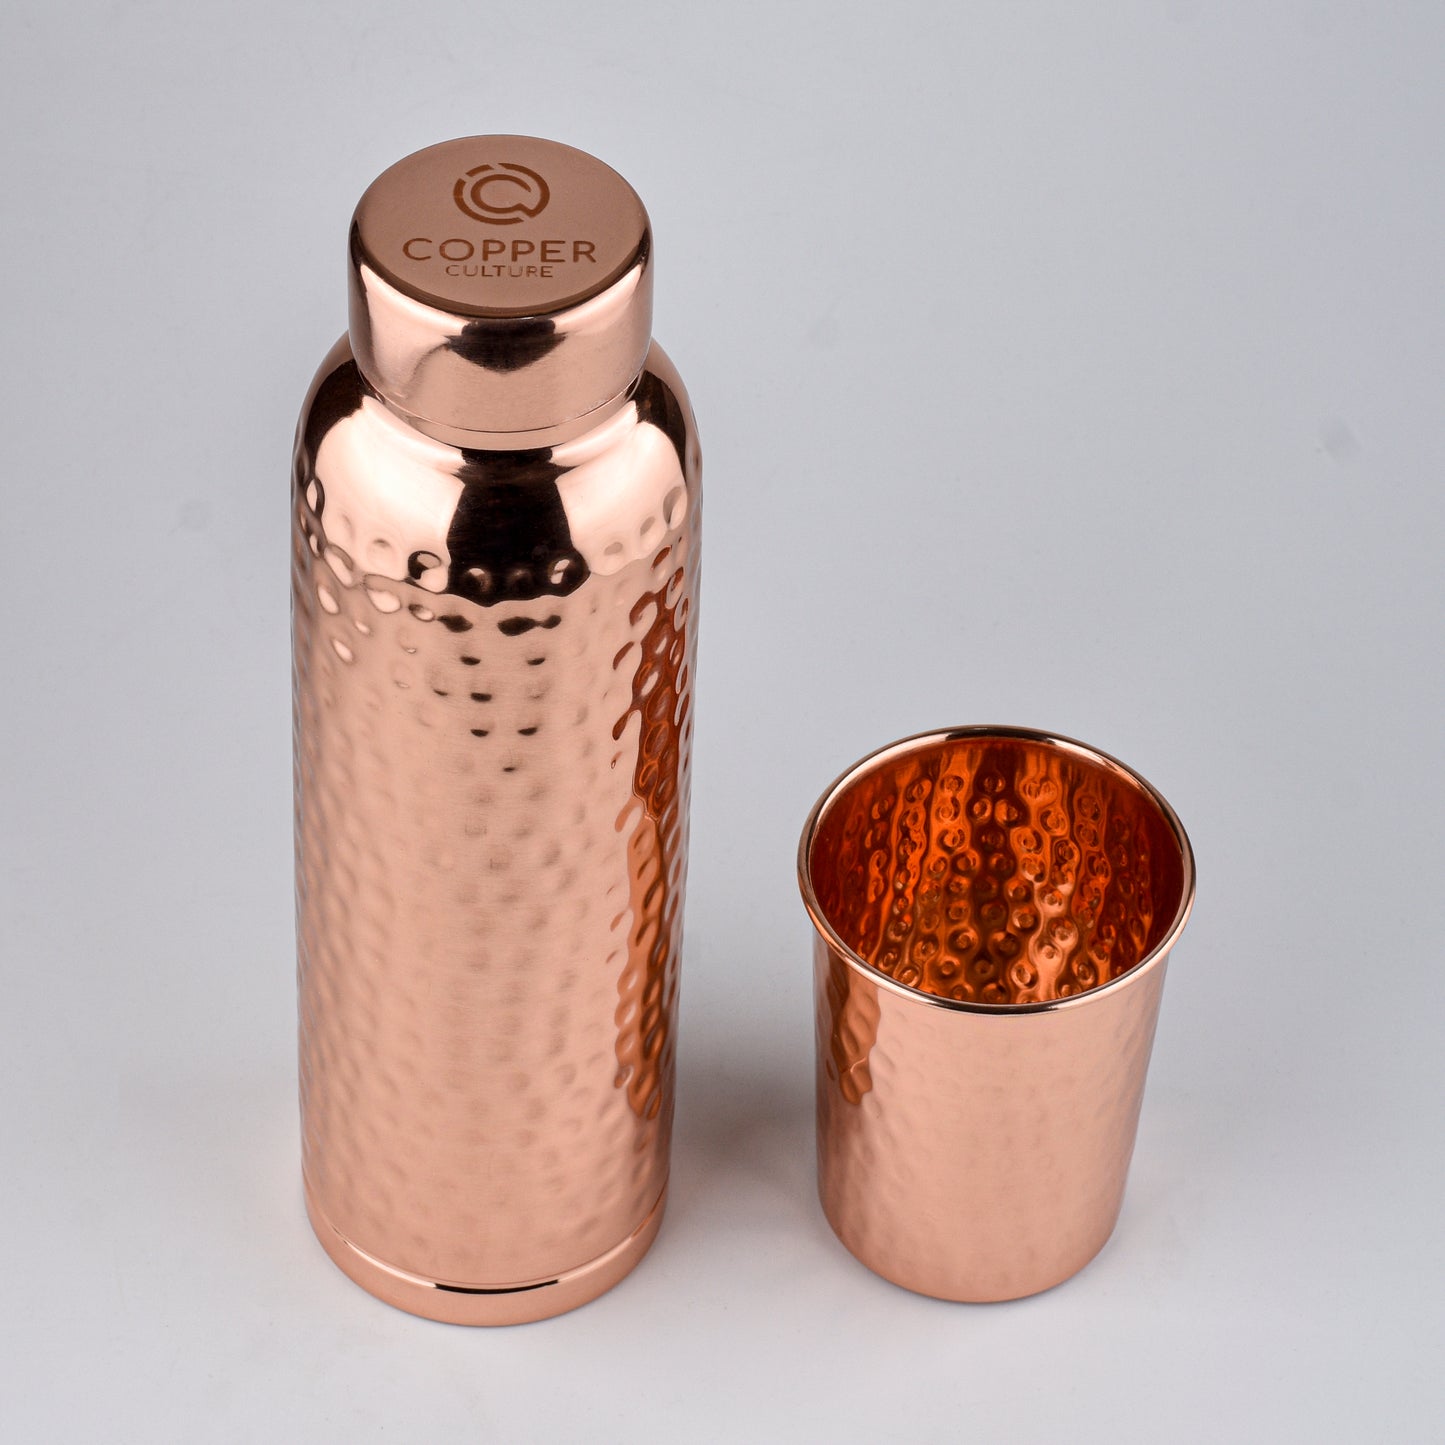 Hammered Copper Gift Set - 2 Bottles & 2 Mugs